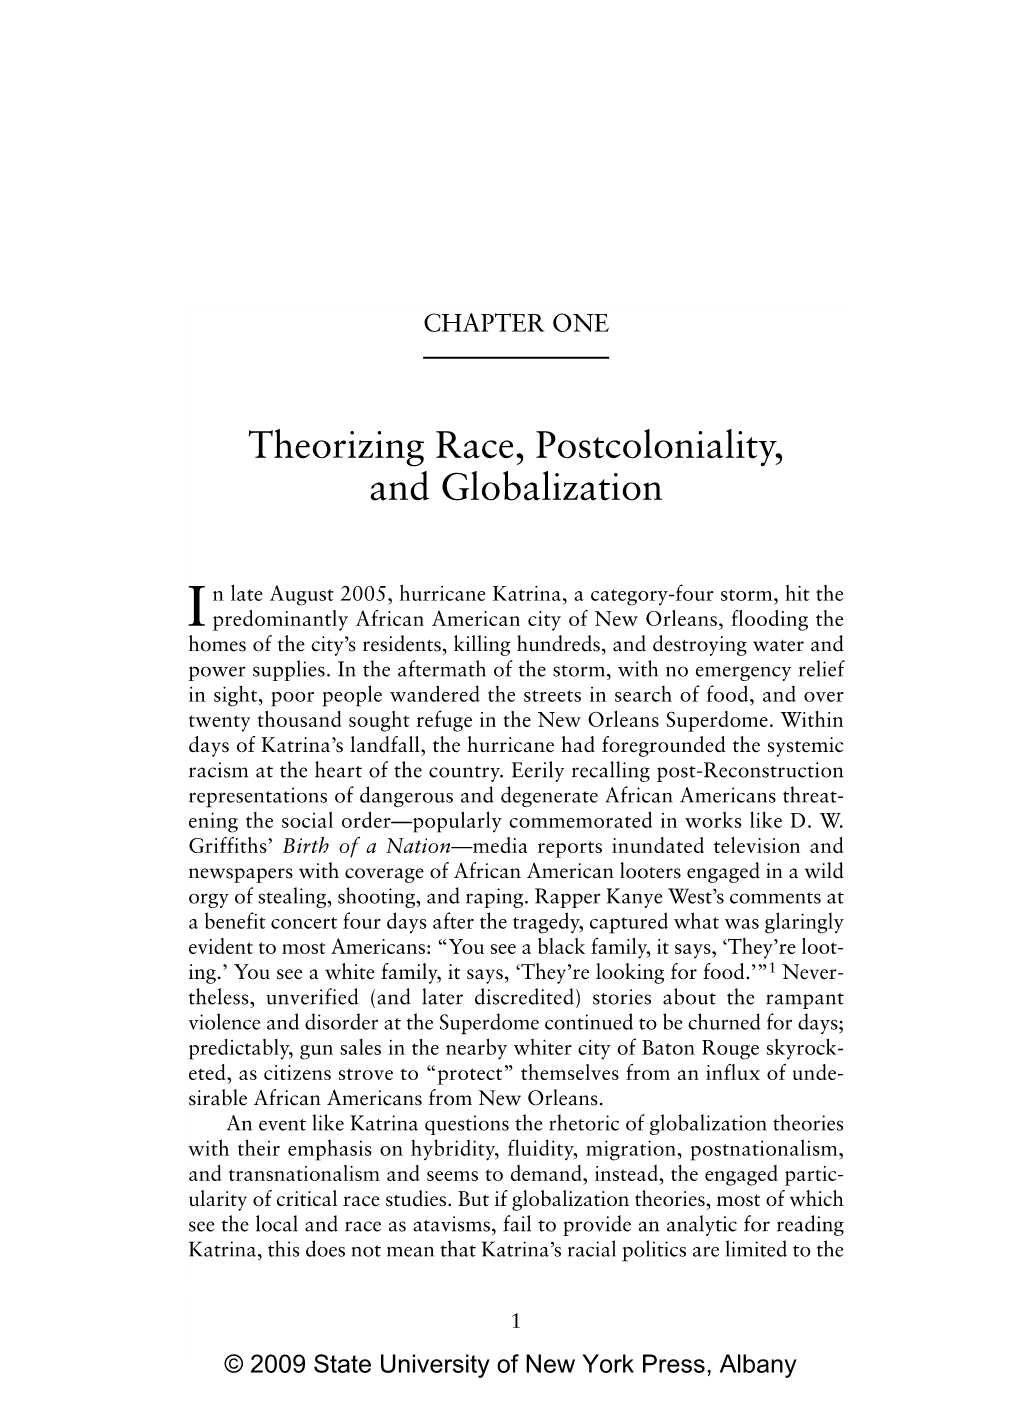 Theorizing Race, Postcoloniality, and Globalization